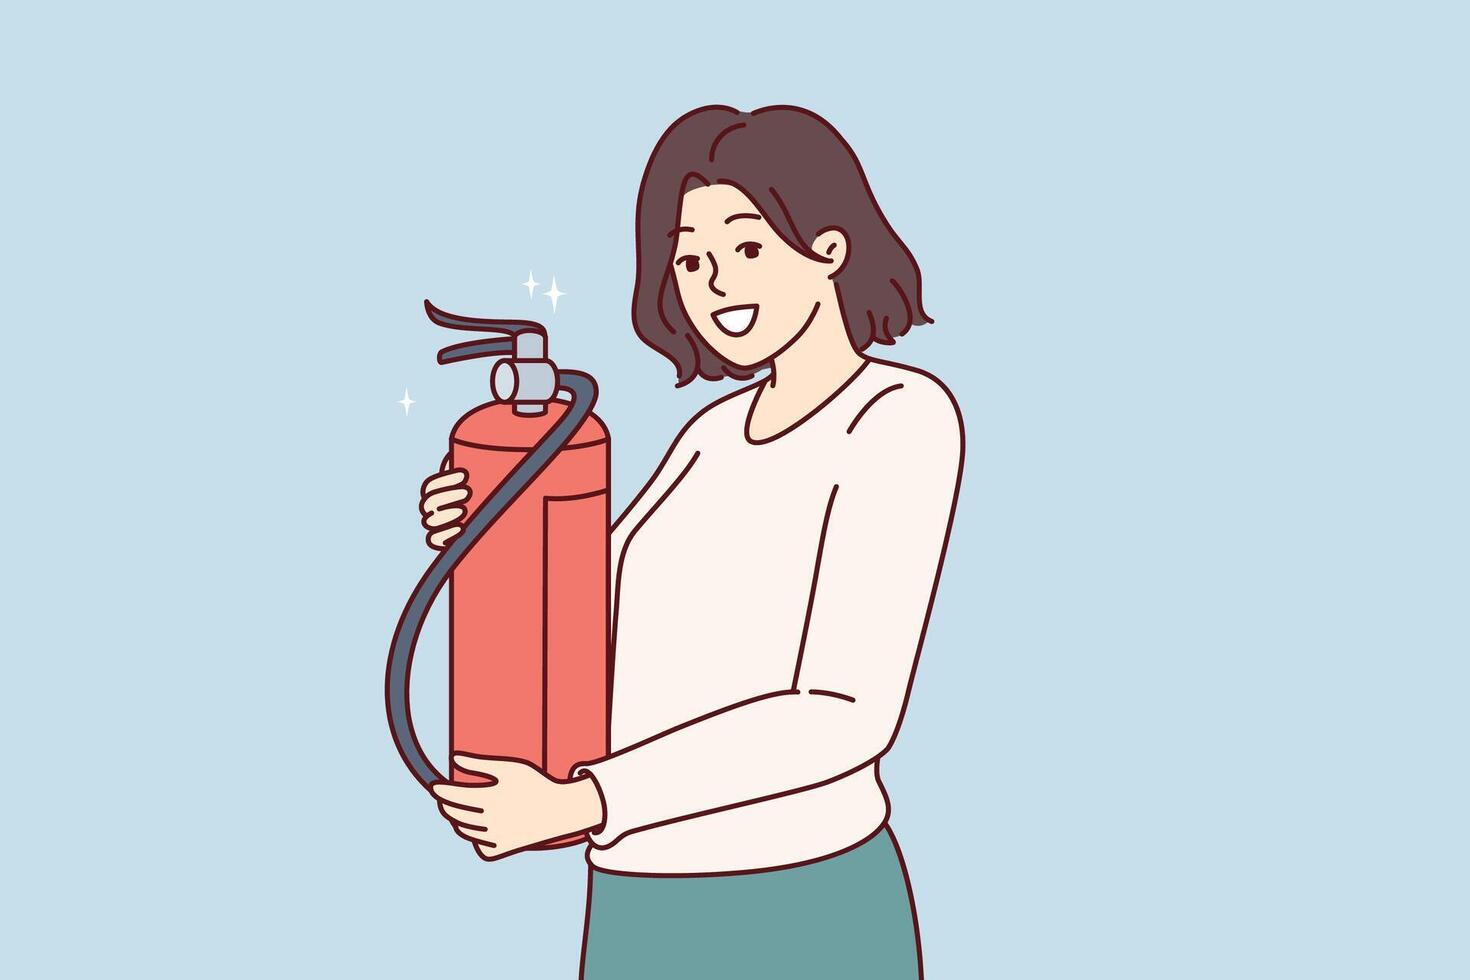 vrouw met brand brandblusser, aanbevelen controle vervaldatum datum van Brand blussen uitrusting vector